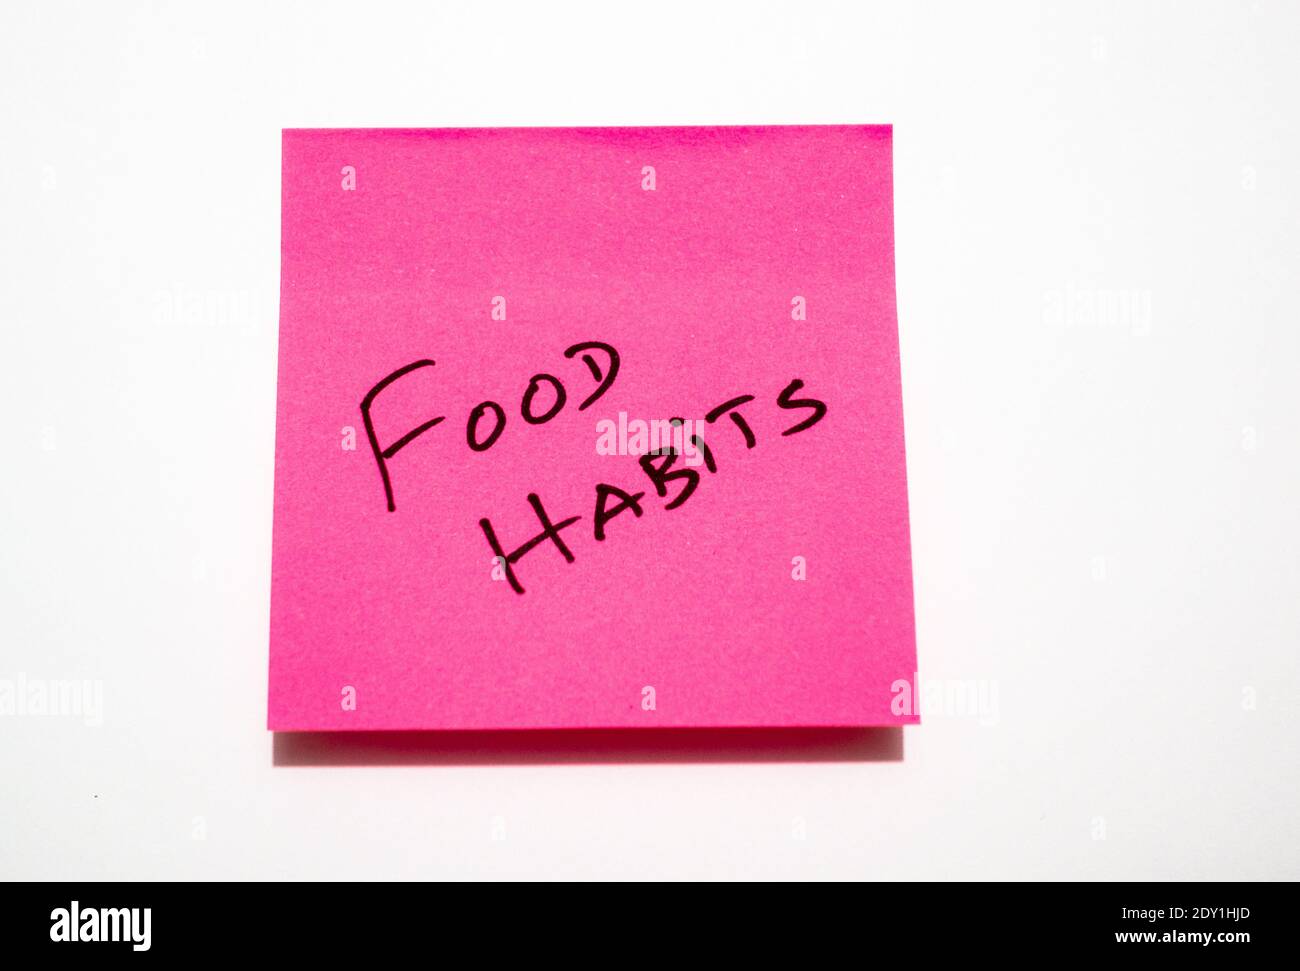 New Year Resolutionen rund um Gewichtsverlust, Ernährung und Ernährungsgewohnheiten Konzept Illustration Stockfoto